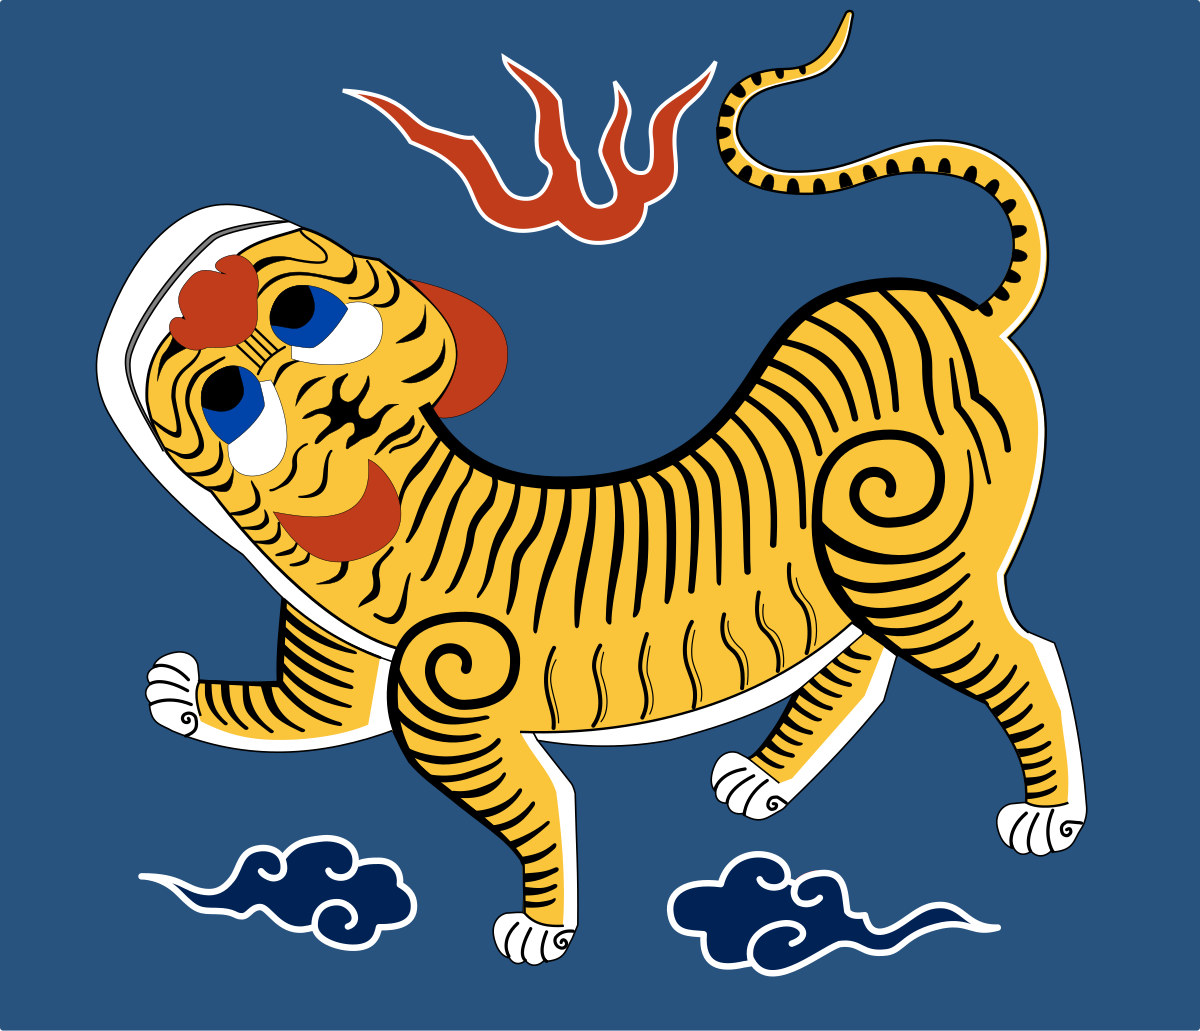 Republic of Formosa - Wikipedia